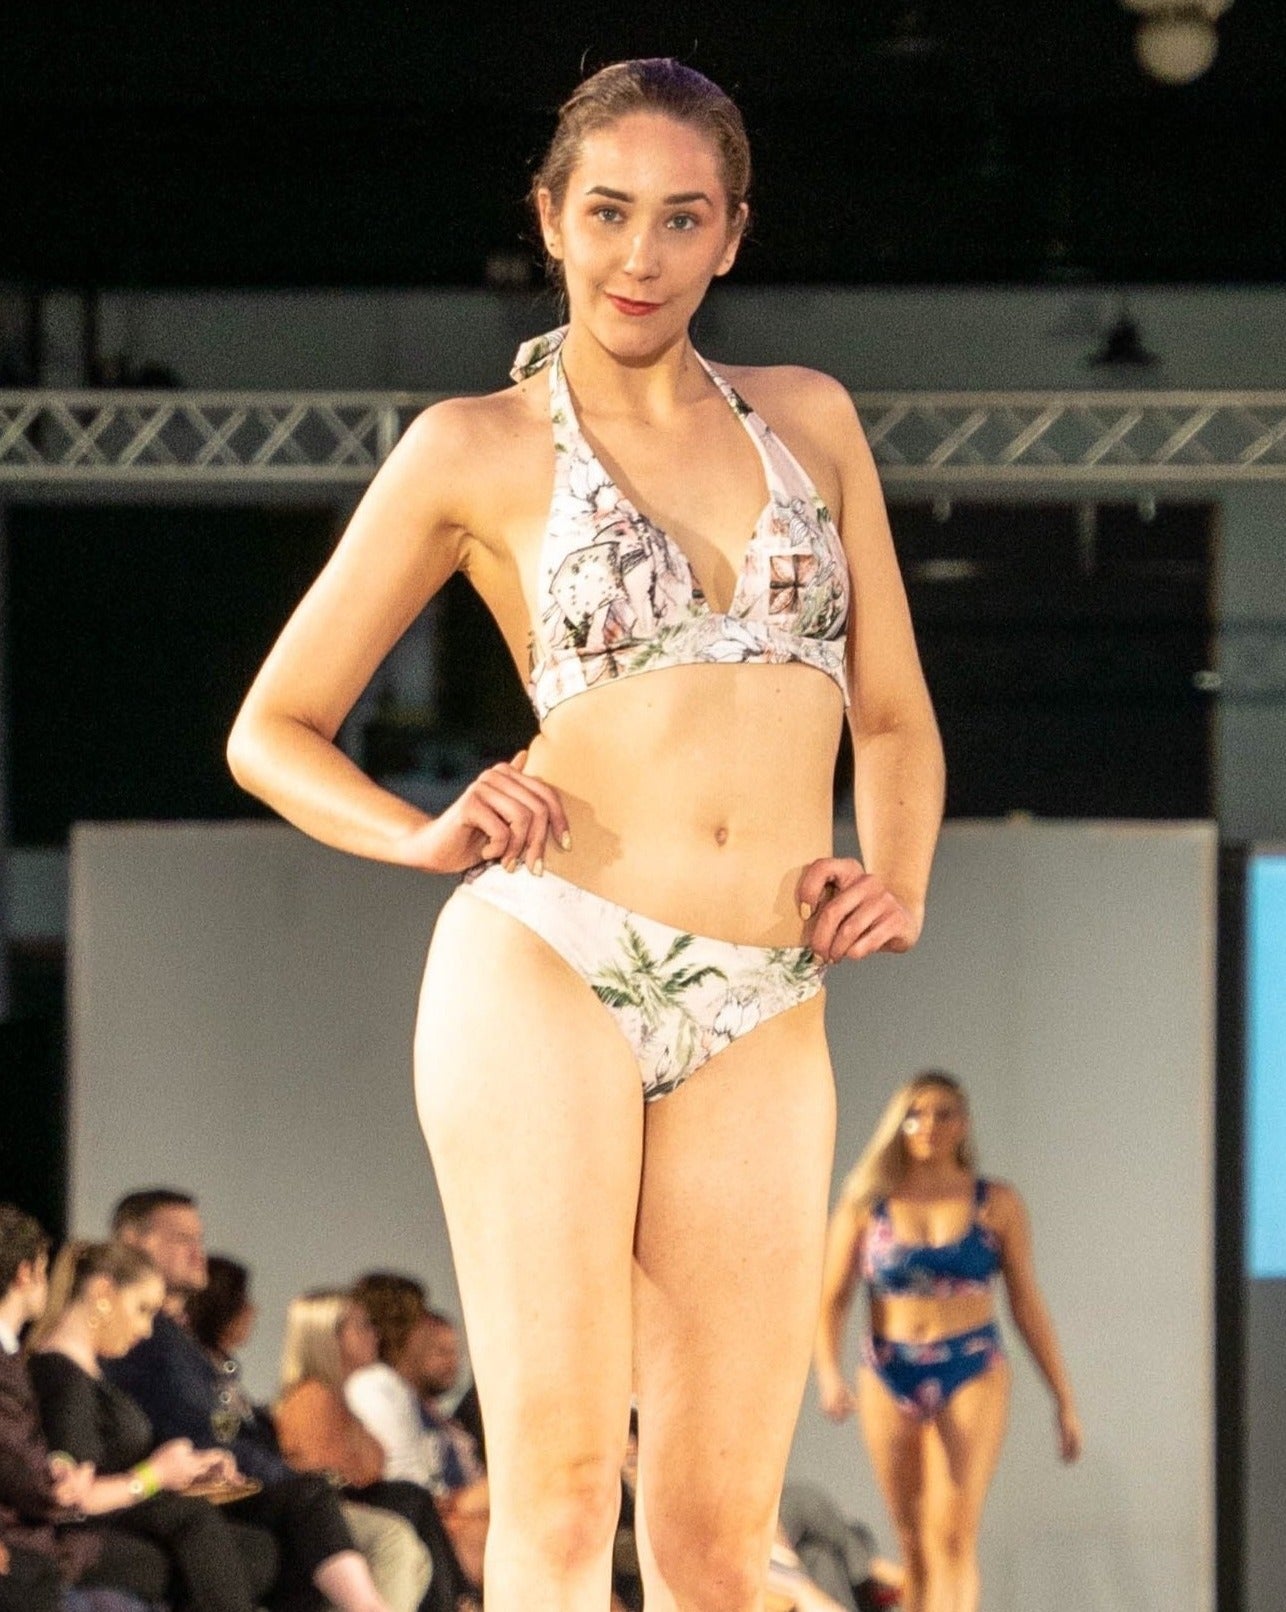 ariana push up bikini top in selo print with built in padding and triangle style bikini top